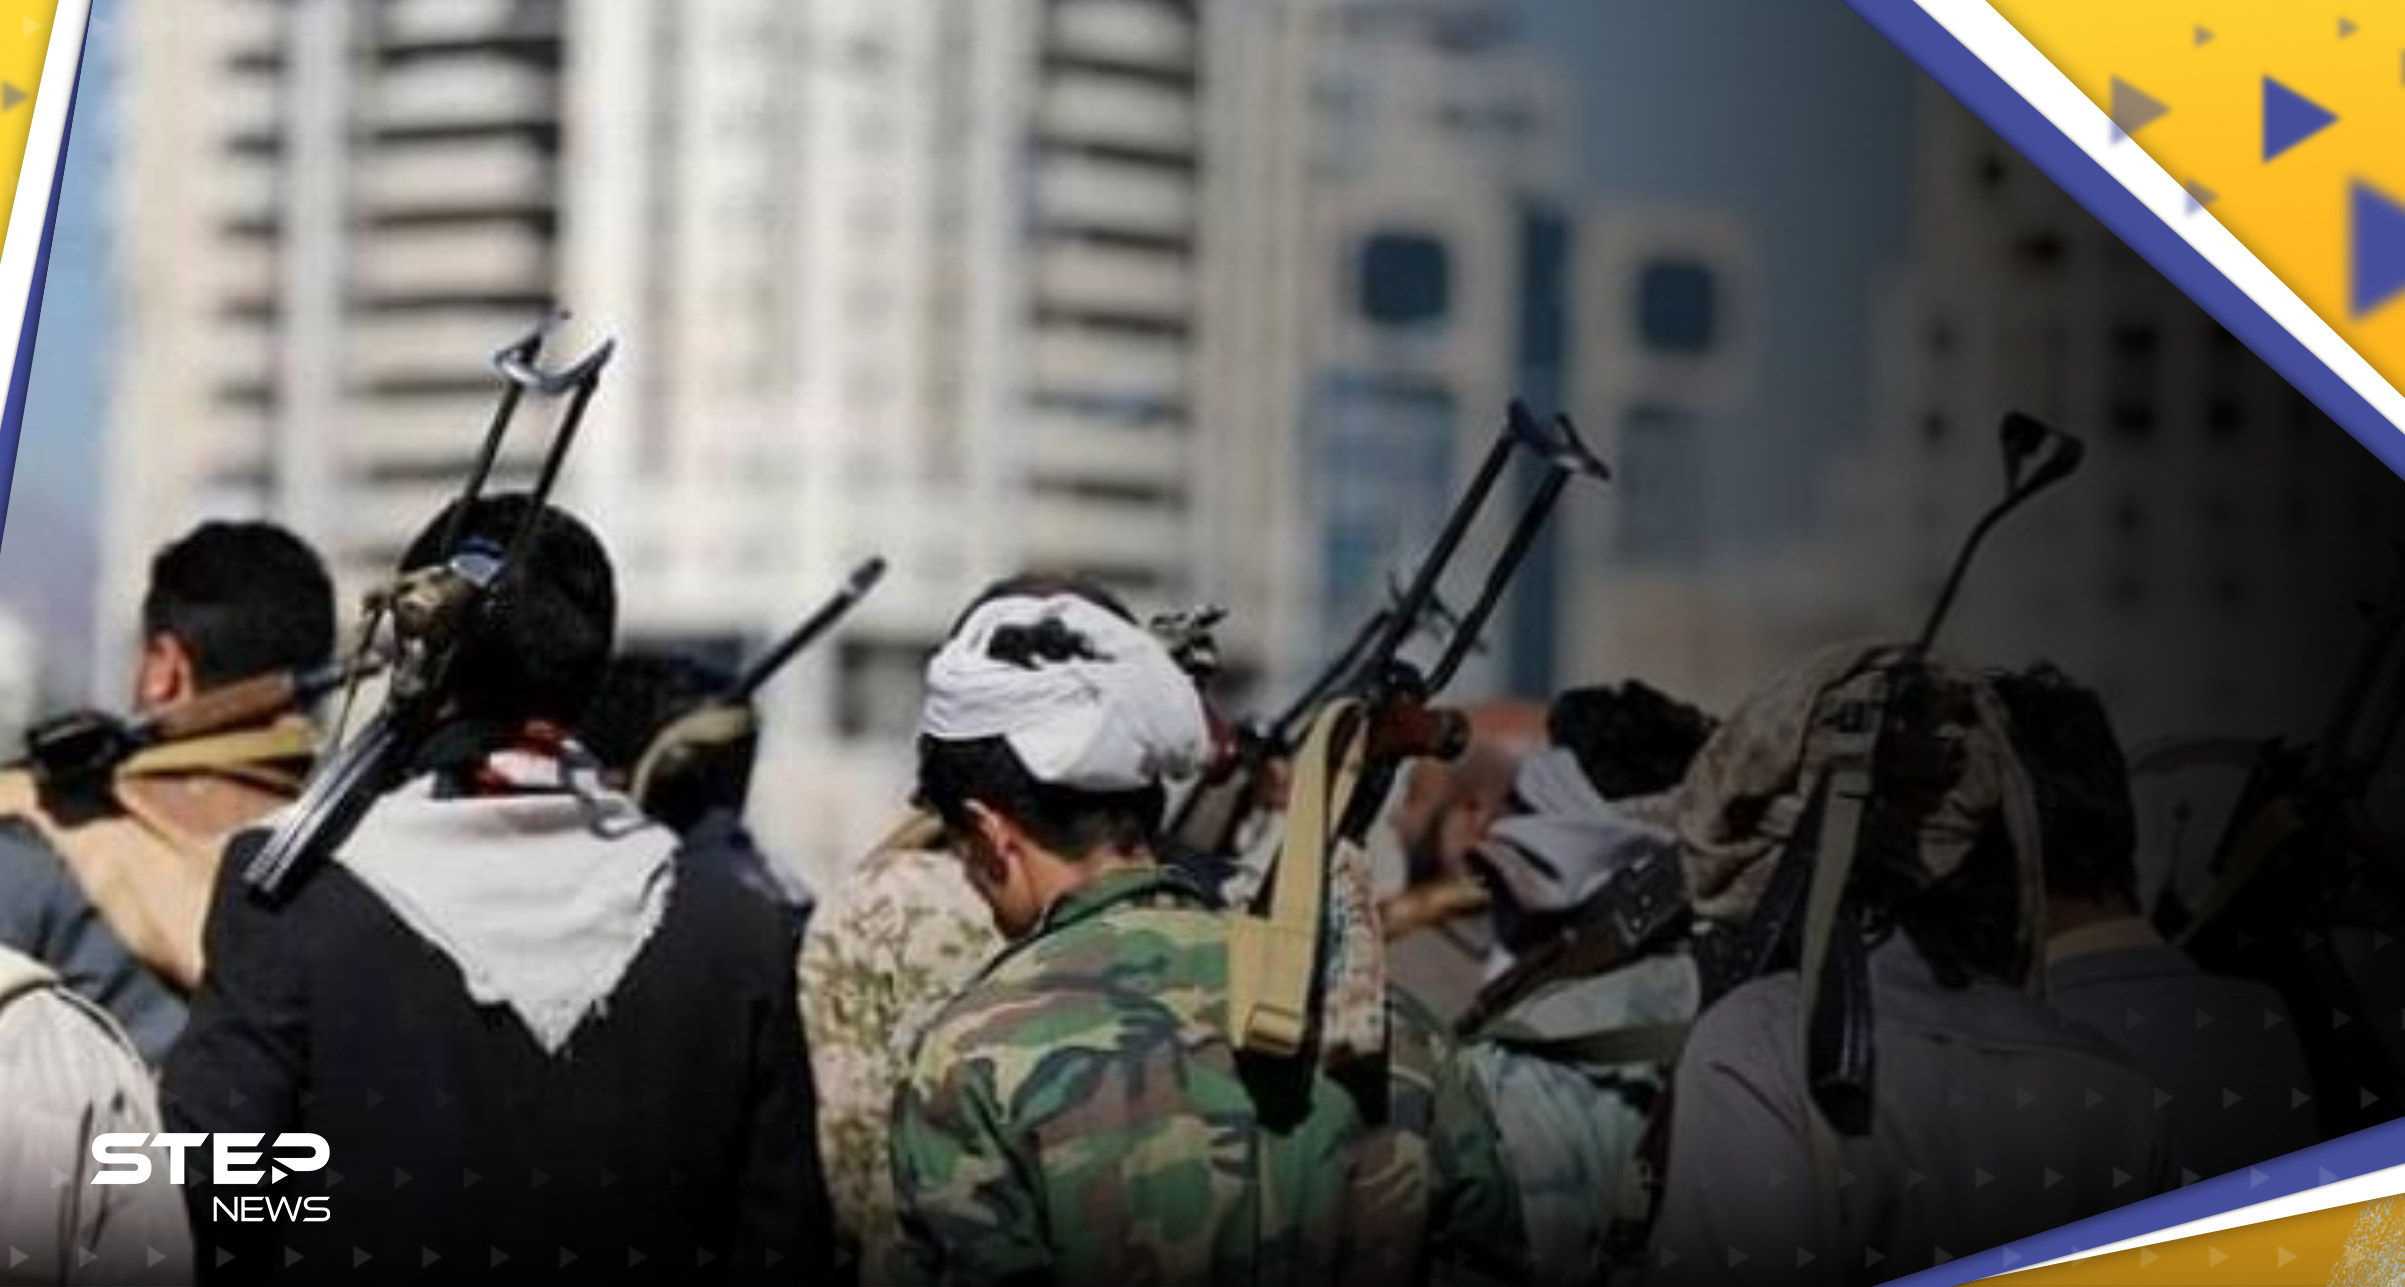 بالفيديو || قيادي حوثي يزعم أن "الله" يدير المعركة في غرفة عمليات جماعته باليمن